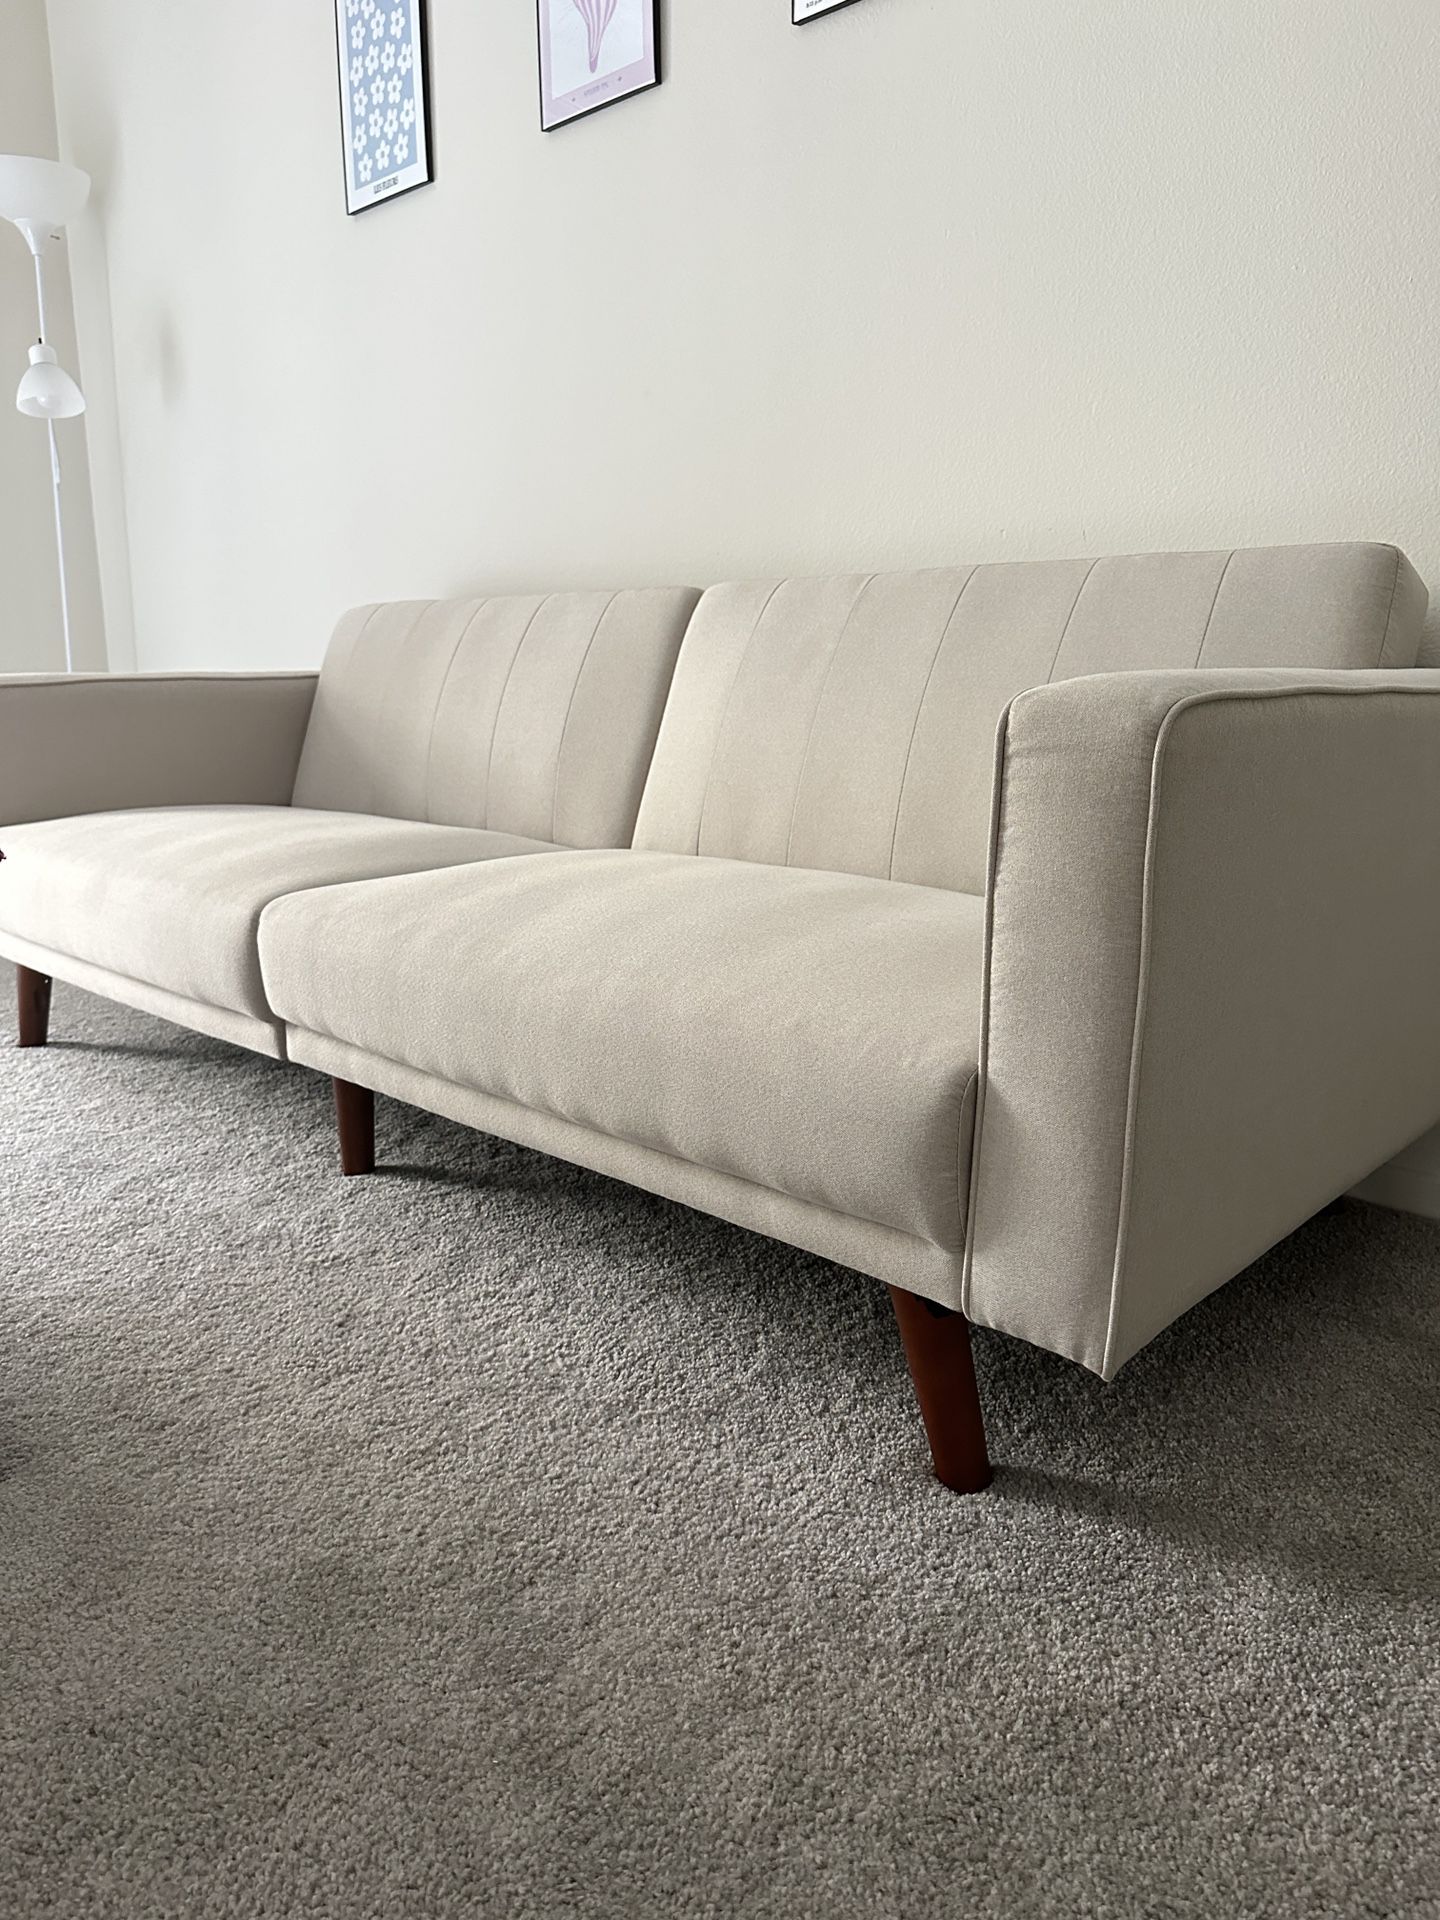 Beige White Futon Couch